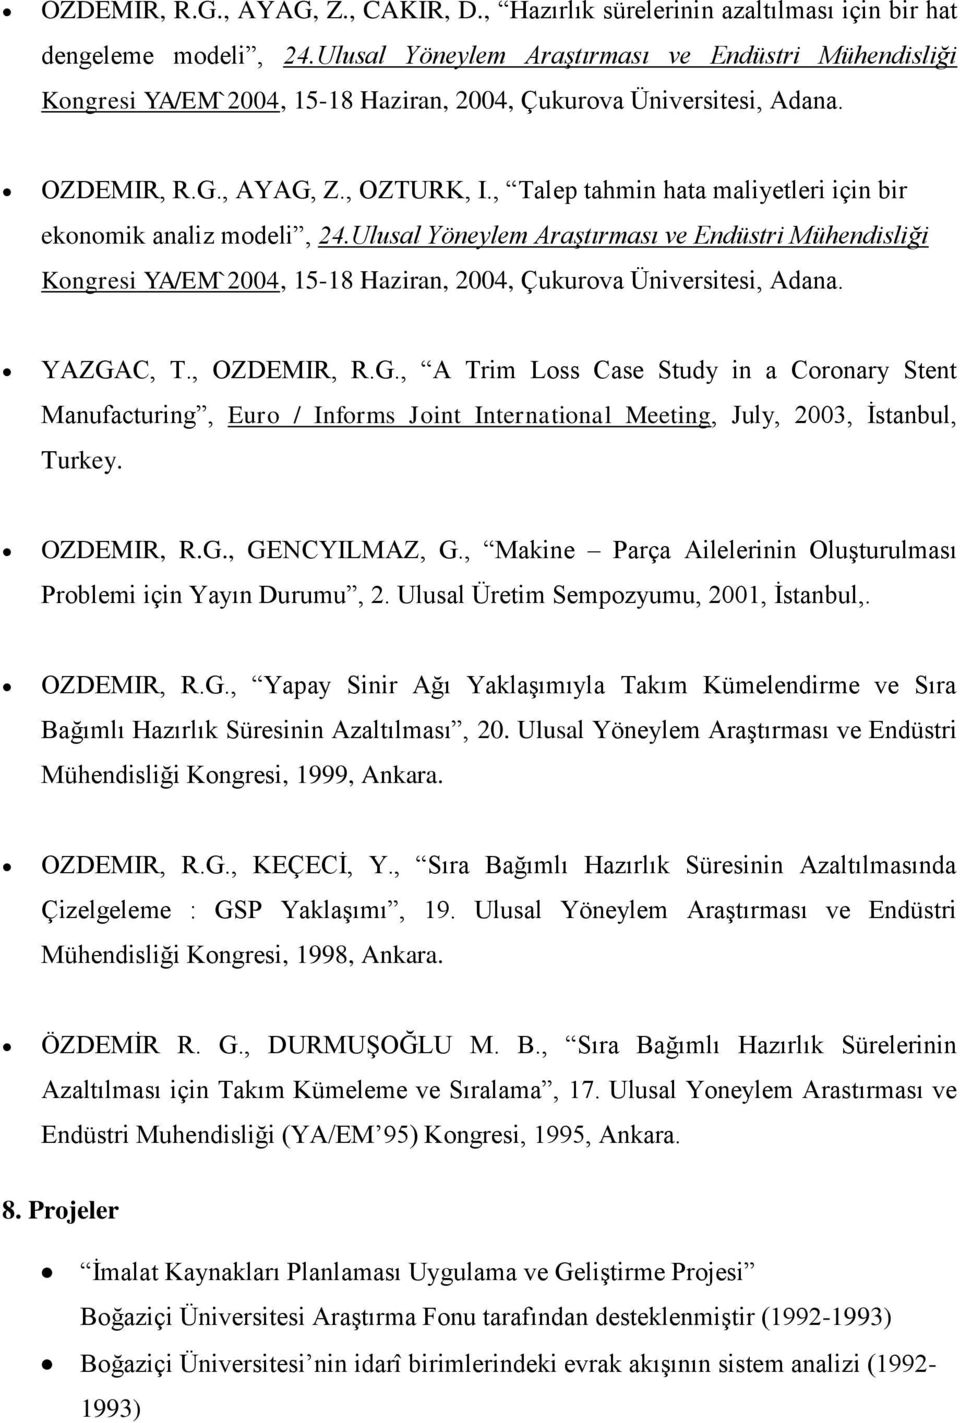 , Talep tahmin hata maliyetleri için bir ekonomik analiz modeli, 24.Ulusal Yöneylem Araştırması ve Endüstri Mühendisliği Kongresi YA/EM`2004, 15-18 Haziran, 2004, Çukurova Üniversitesi, Adana.